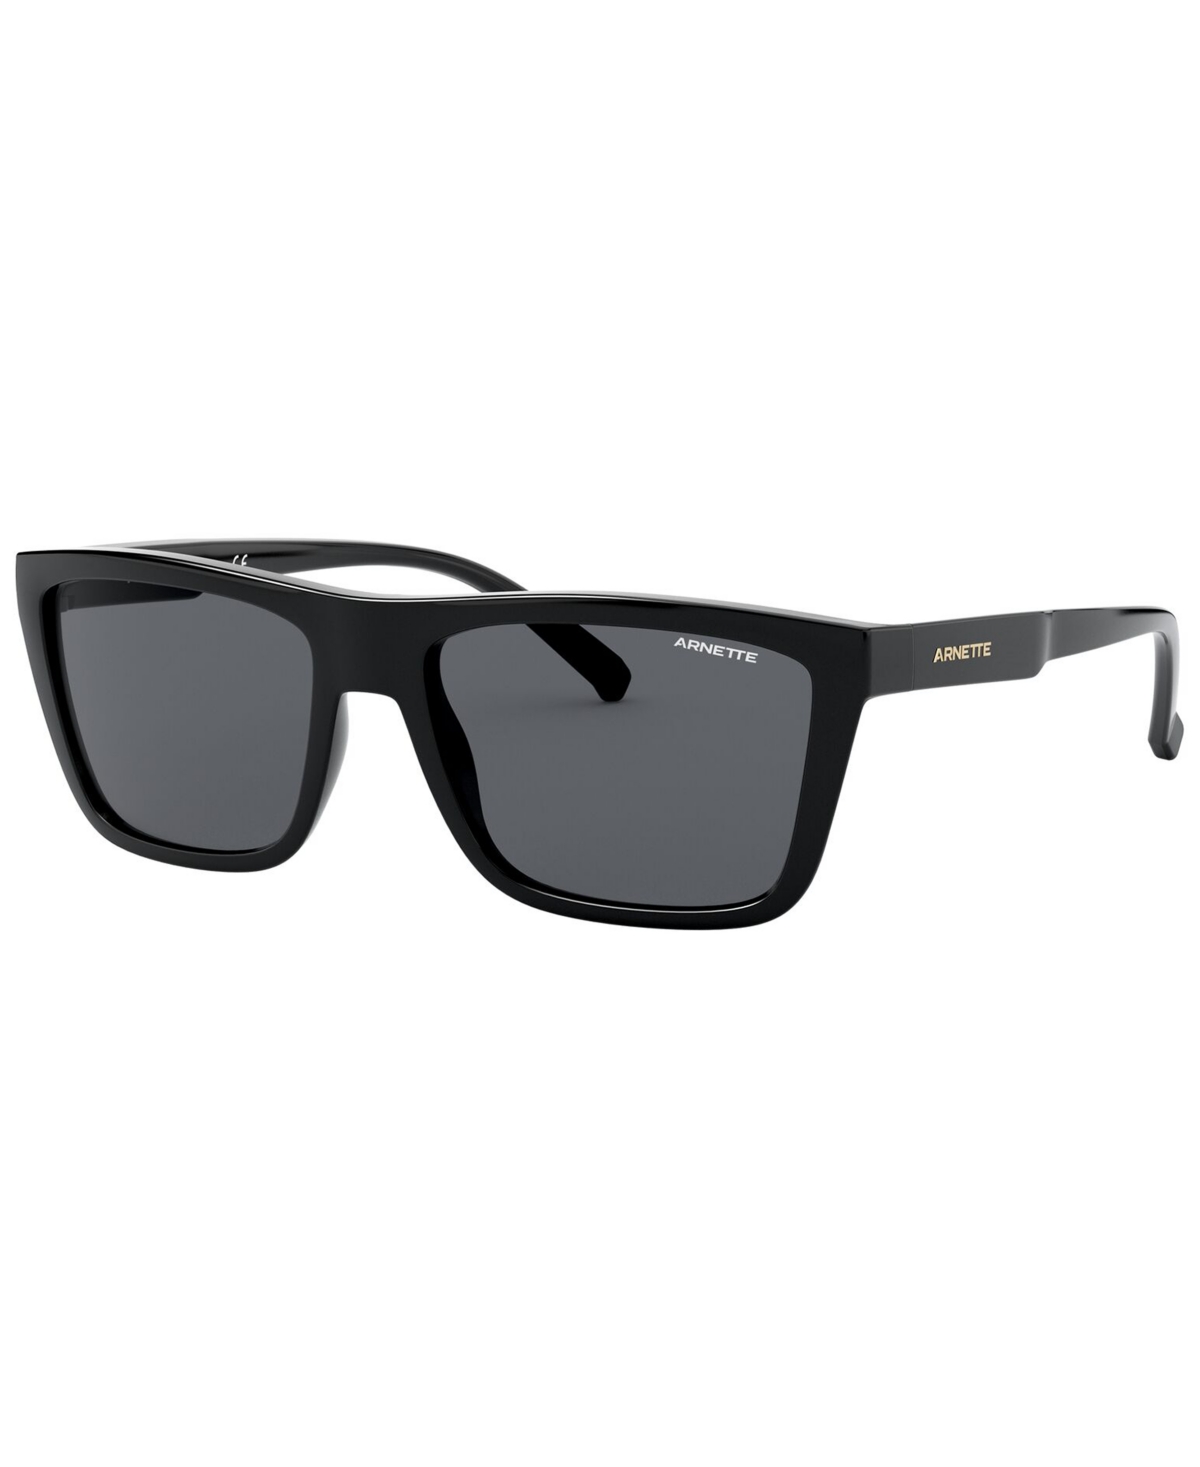 Arnette Men's Sunglasses, An4262 In Black,grey